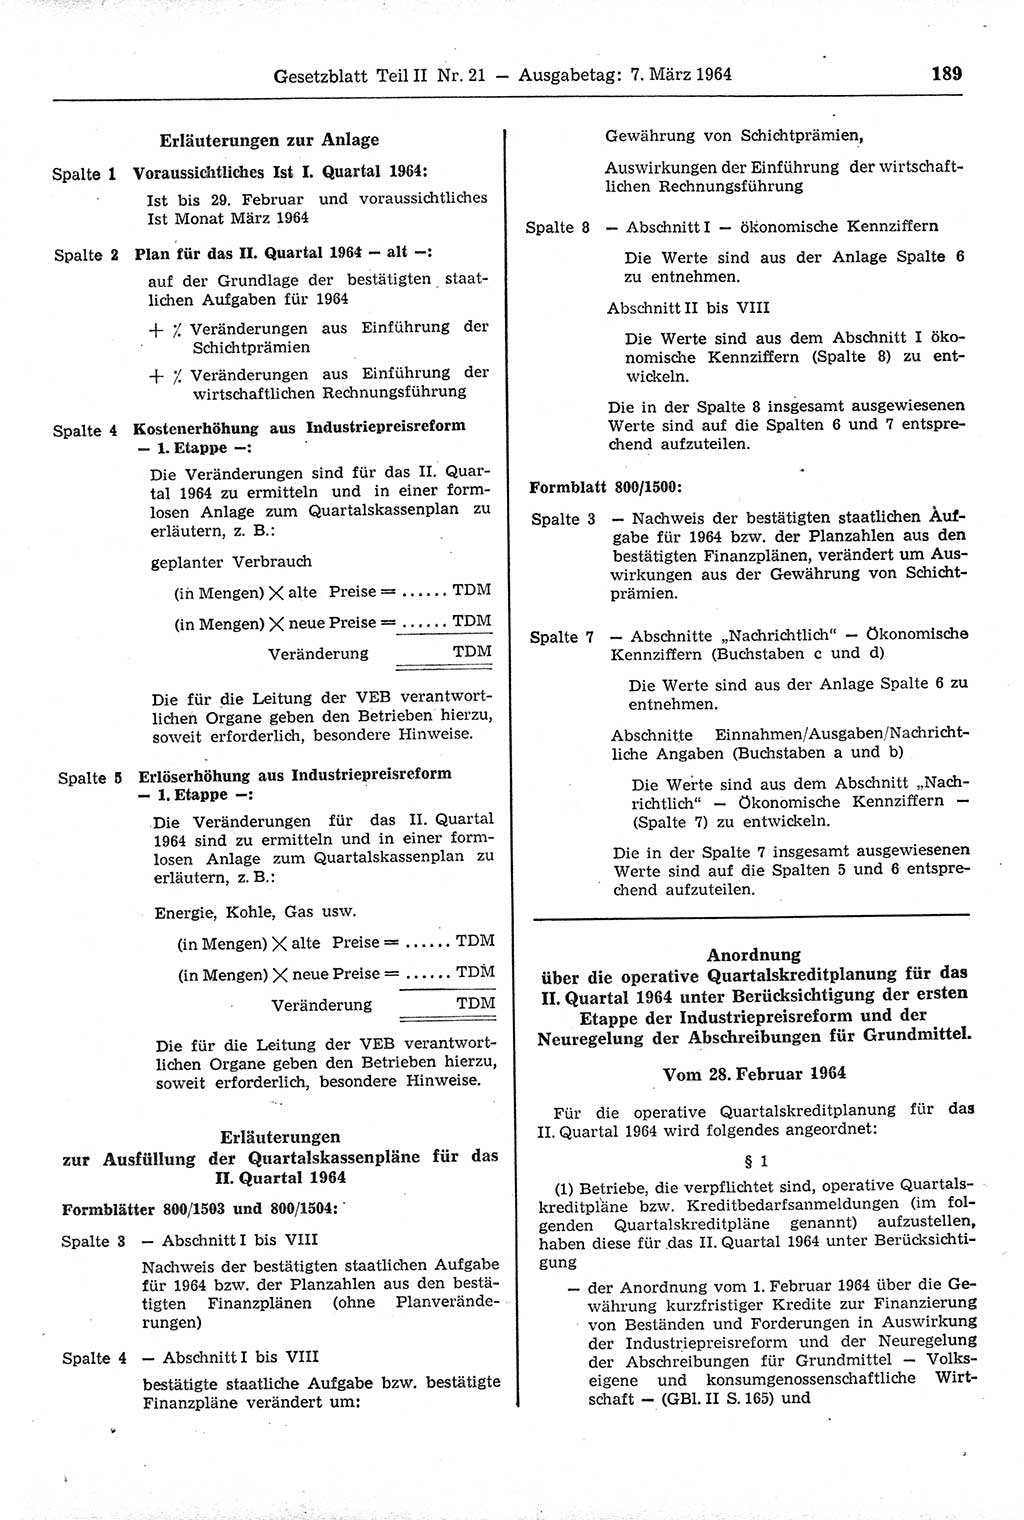 Gesetzblatt (GBl.) der Deutschen Demokratischen Republik (DDR) Teil ⅠⅠ 1964, Seite 189 (GBl. DDR ⅠⅠ 1964, S. 189)